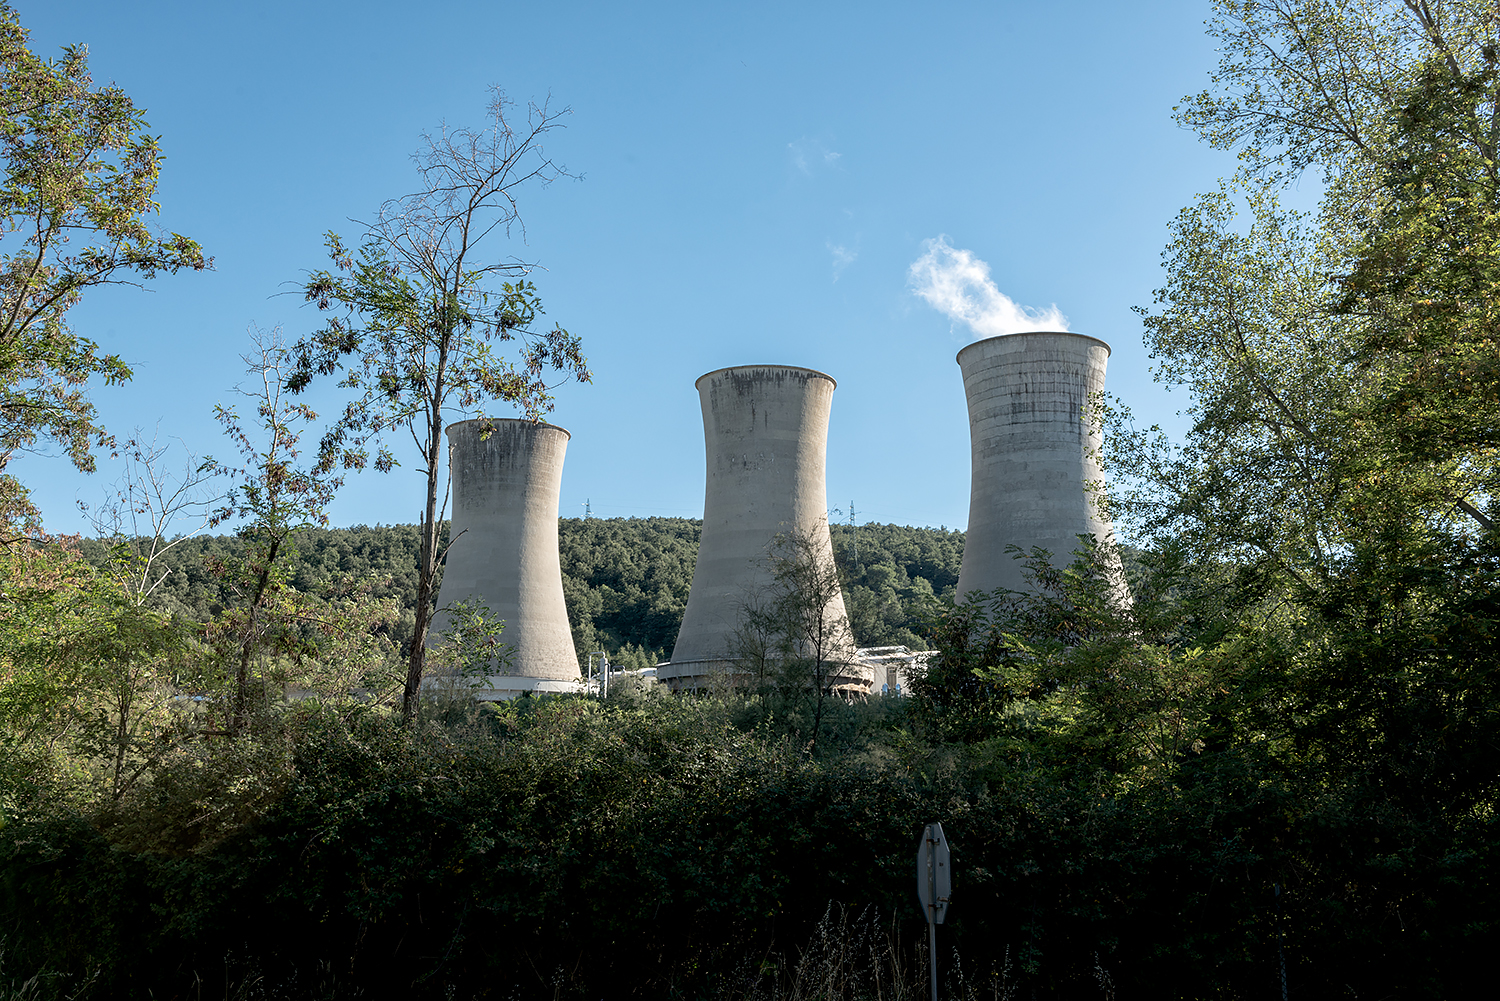  ITALIA, 2017, Centrale geotermica. Nel 1911 fu costruito a Larderello il primo impianto geotermico industriale al monto, l’unico fino al 1958. Dalle torri di raffreddamento fuoriesce anidride carbonica (85,4%), idrogeno solforato (1-2%) e metano (0,